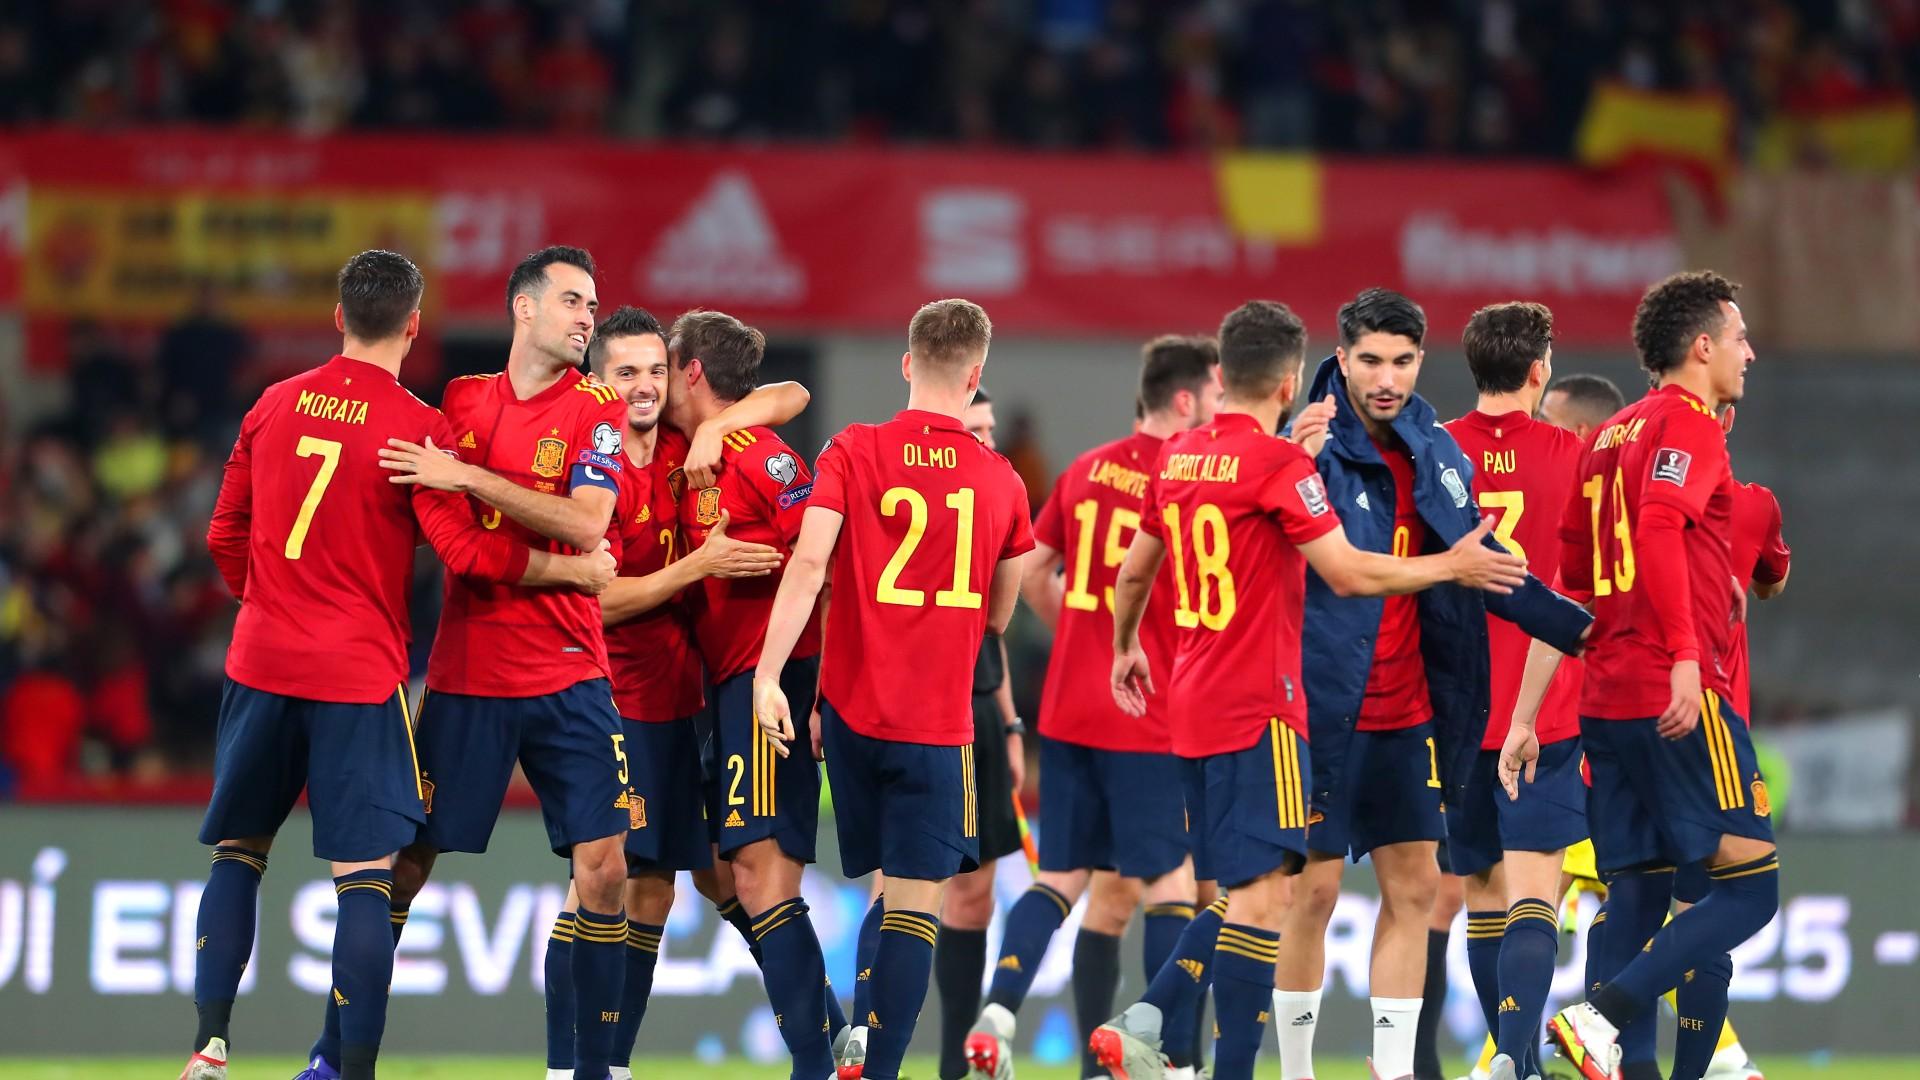 西班牙队赛事,西班牙世界杯,西班牙国家队,世界杯比赛,米兰,足球